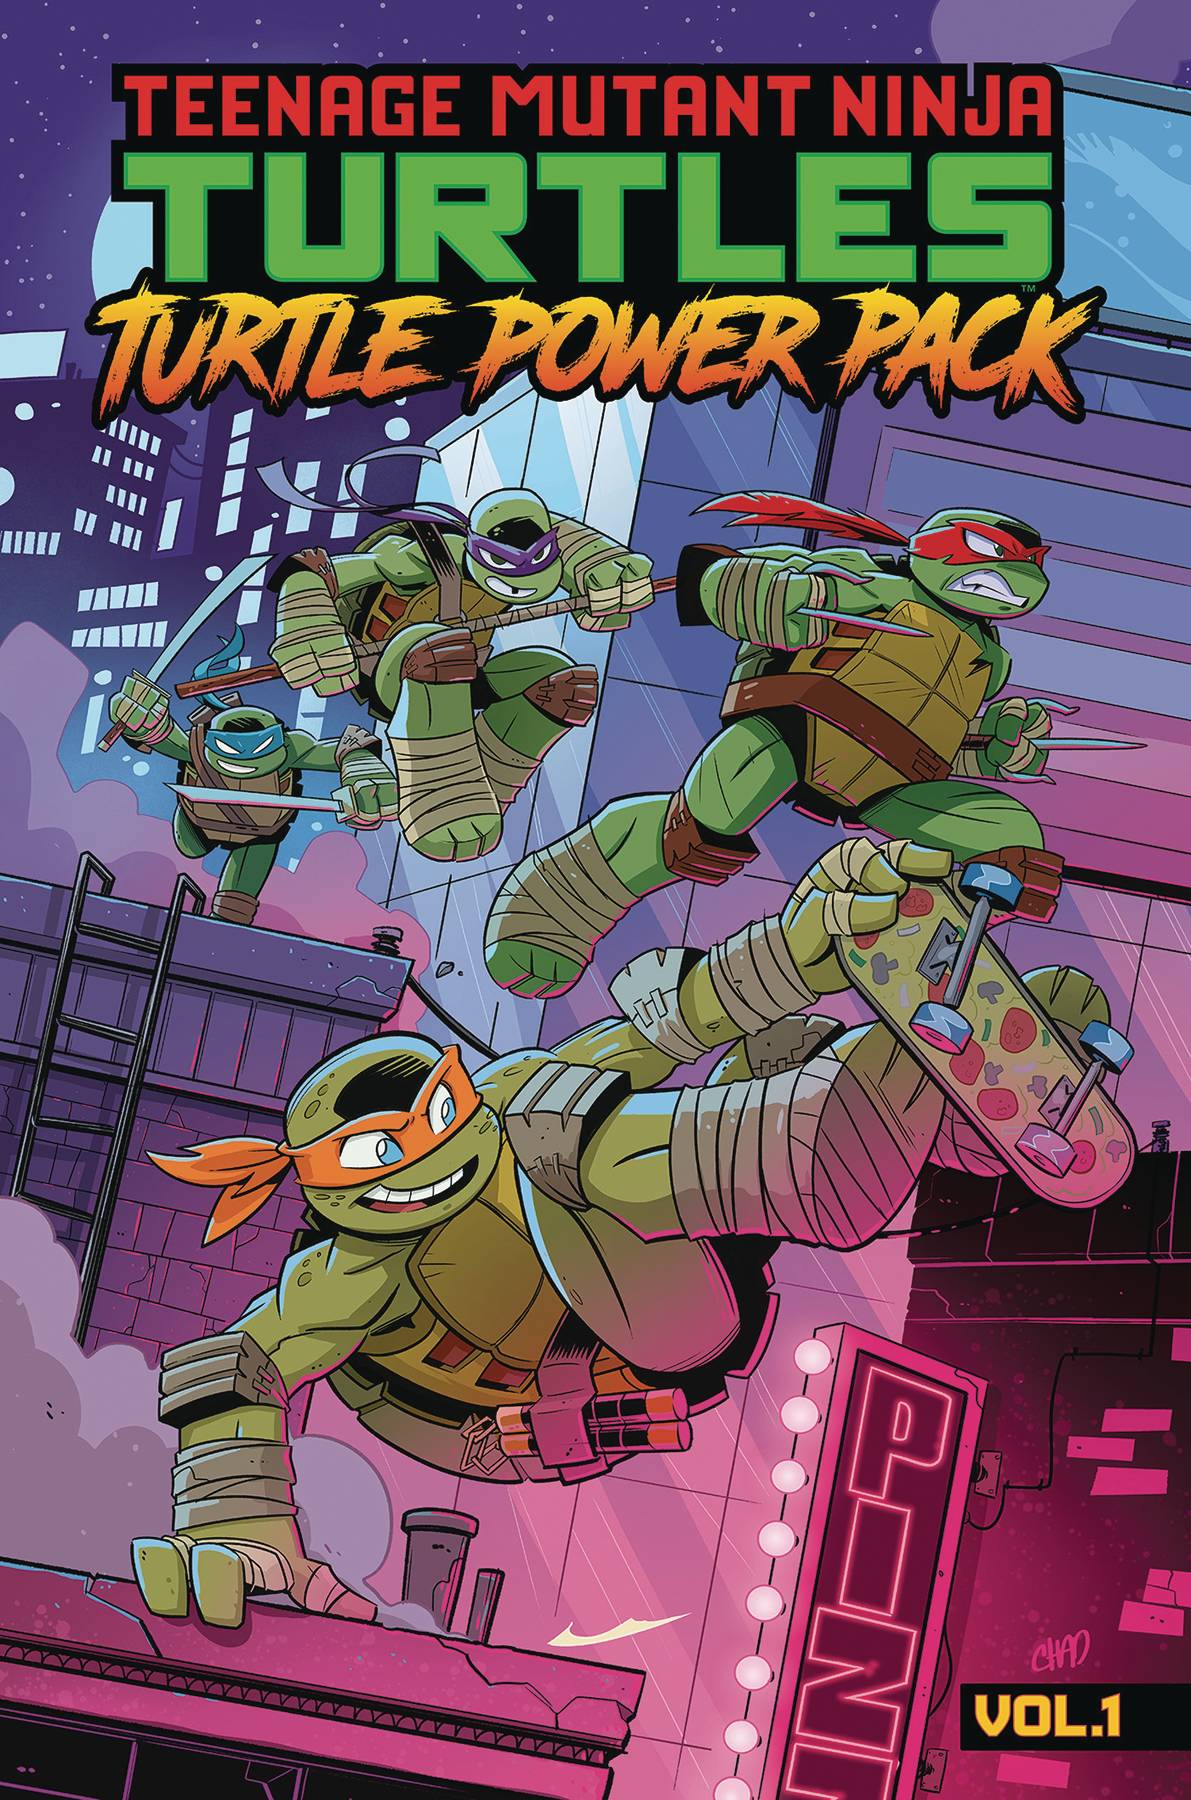 TMNT TURTLE POWER PACK TP VOL 01 (12 Jun Release)